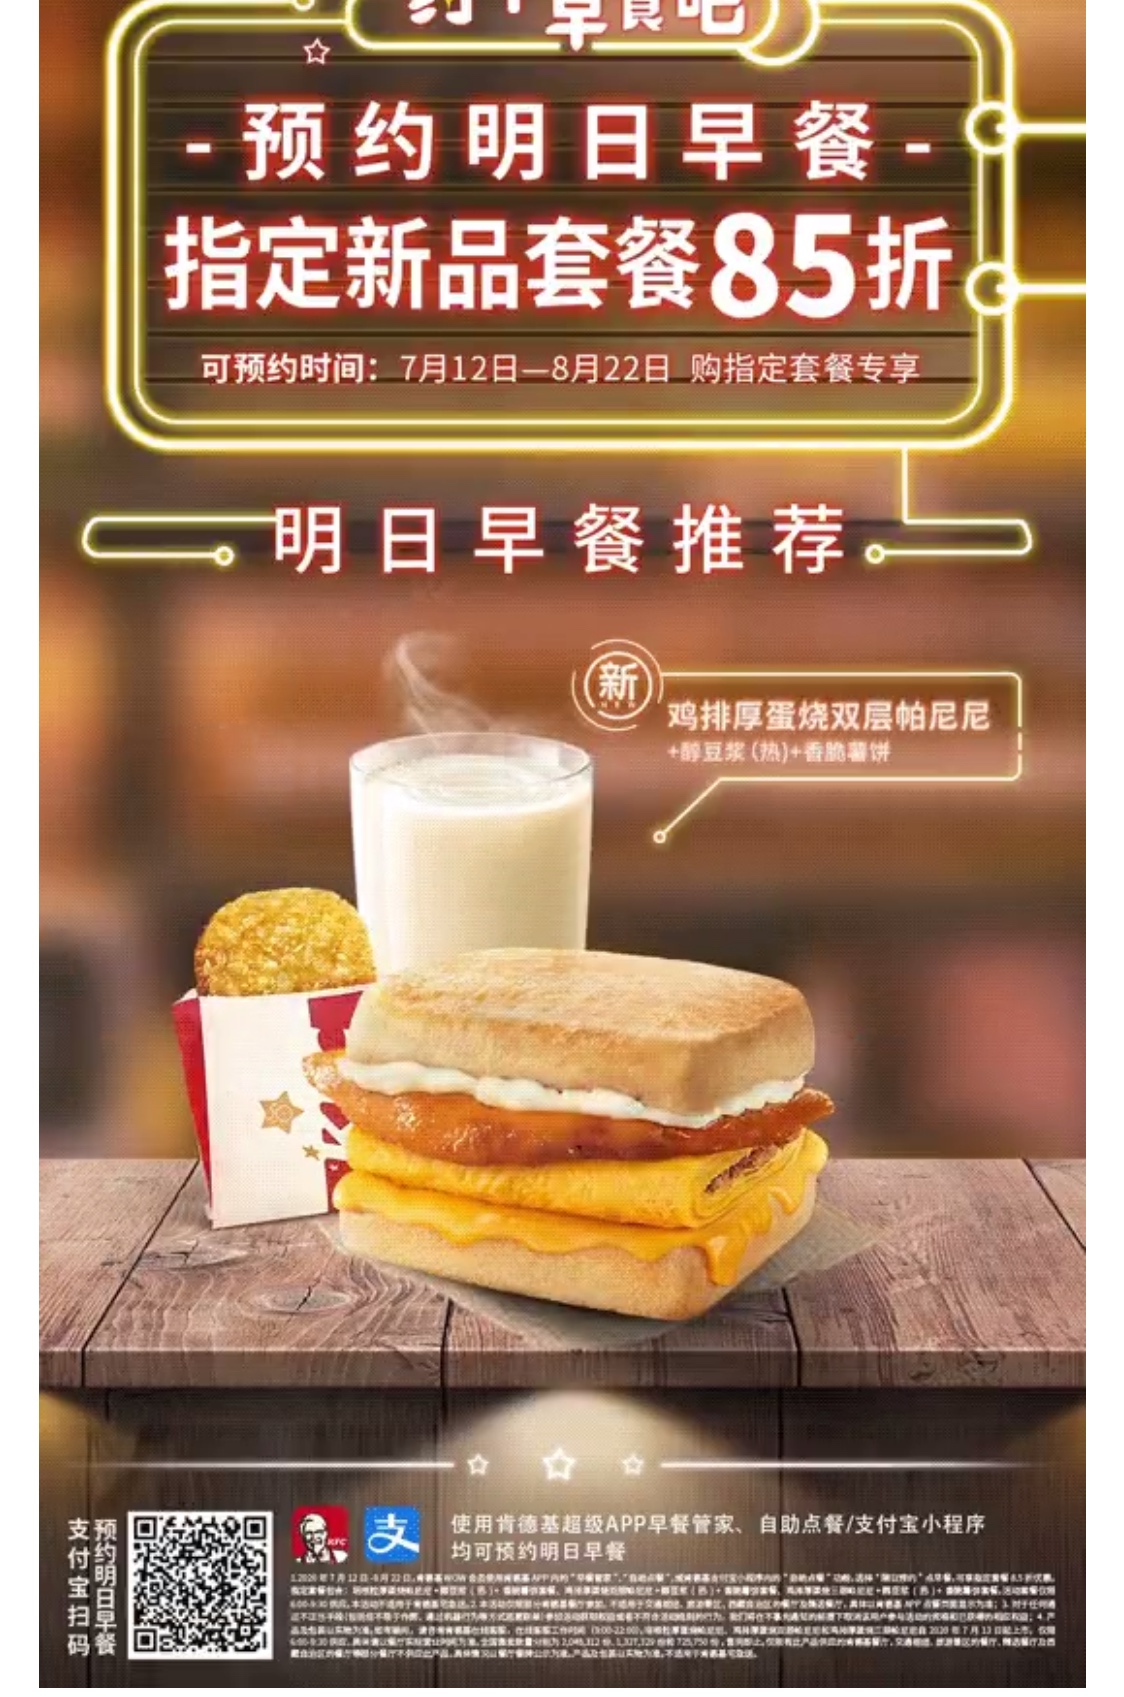 主题:kfc的明日早餐套餐是不是余生的升级版,加了一个薯饼 [7]收藏该